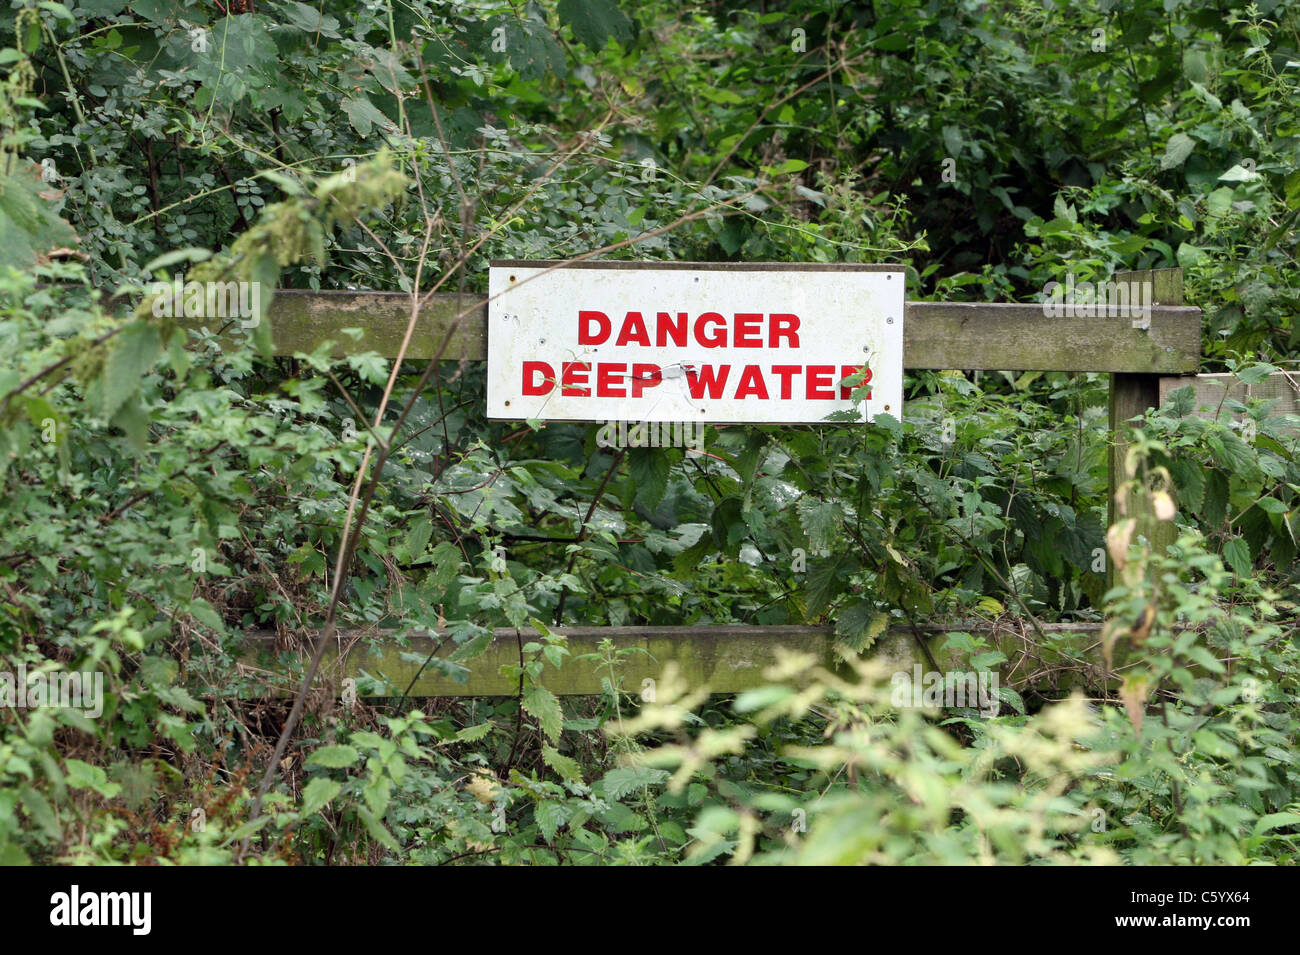 Die Gefahr einer tiefen Wasser Warnschild im Sommer Unterholz auf einem Pfad in grovely Woods, Wilton, wiltshire Grossbritannien. Stockfoto